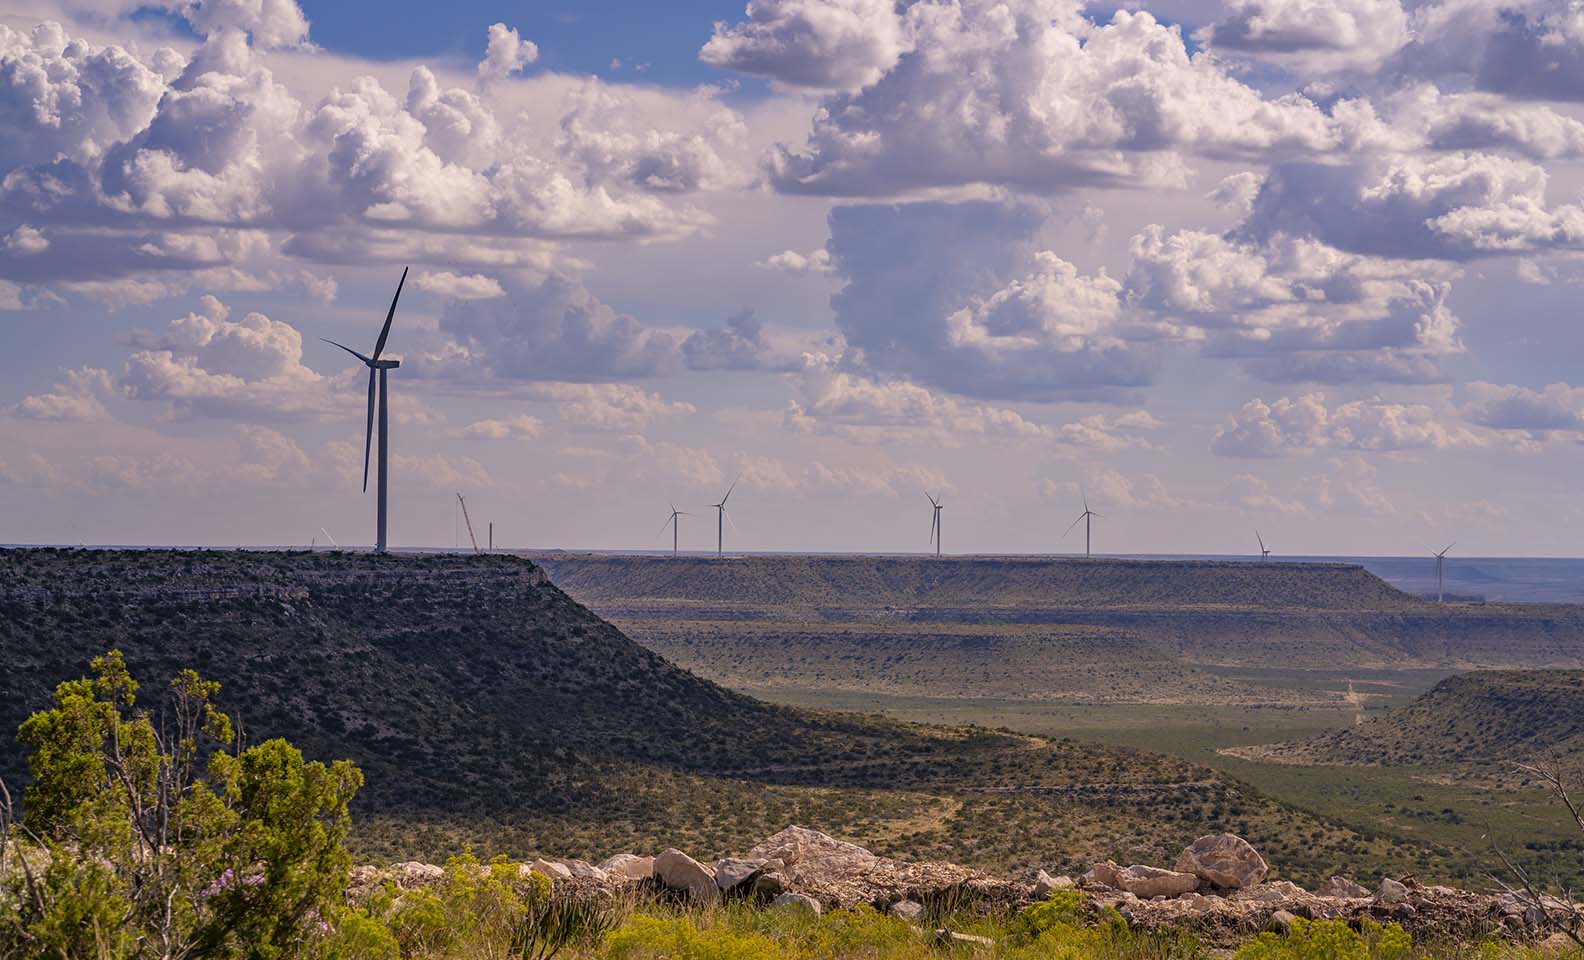 Panorama general de las turbinas eólicas y el paisaje rural verde